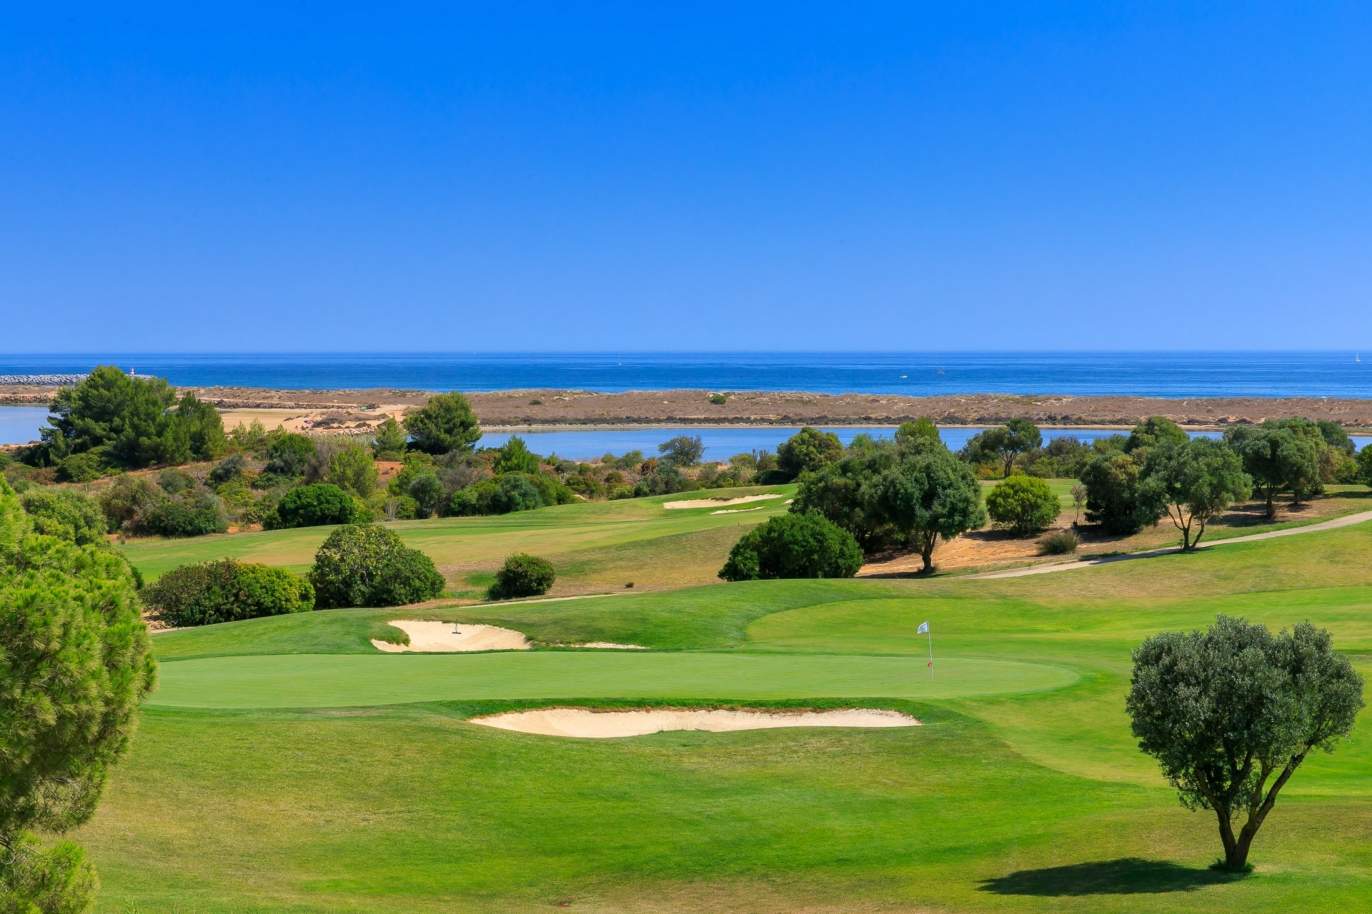 Terrain à vendre dans un complexe de golf, Lagos, Algarve, Portugal_122915